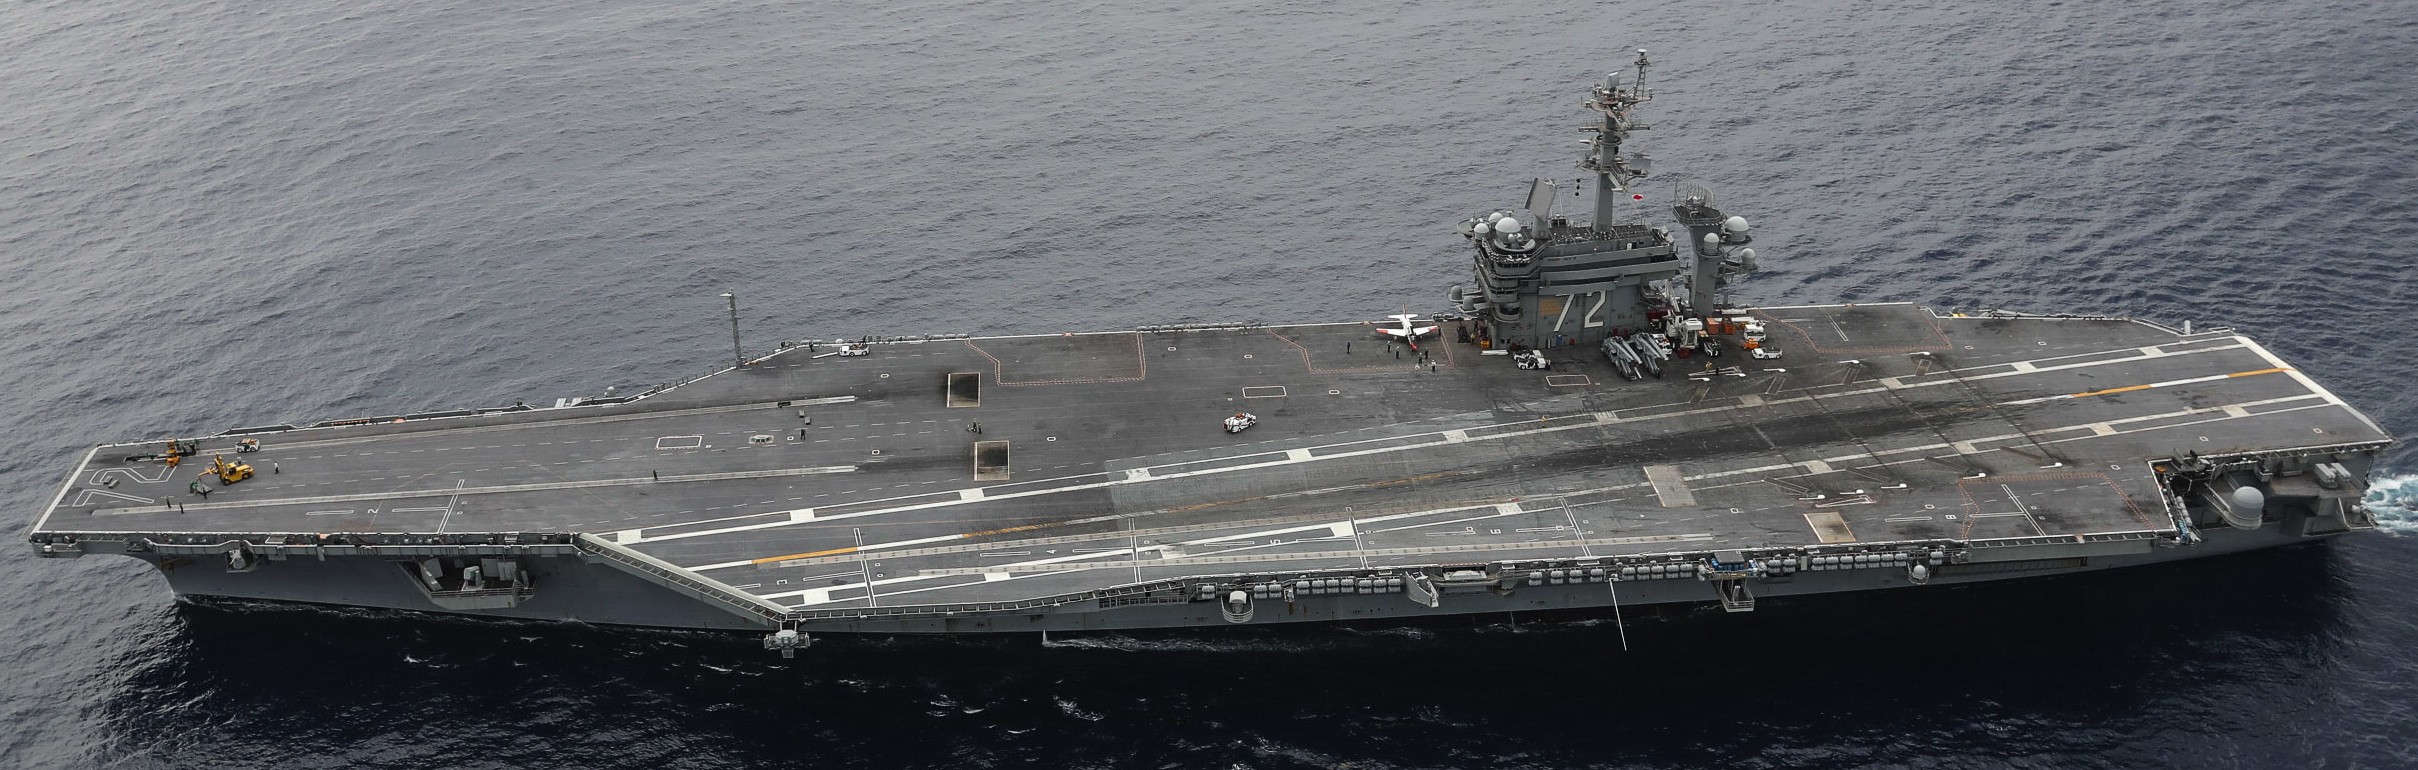 cvn-72 uss abraham lincoln nimitz class aircraft carrier air wing cvw-7 us navy 59